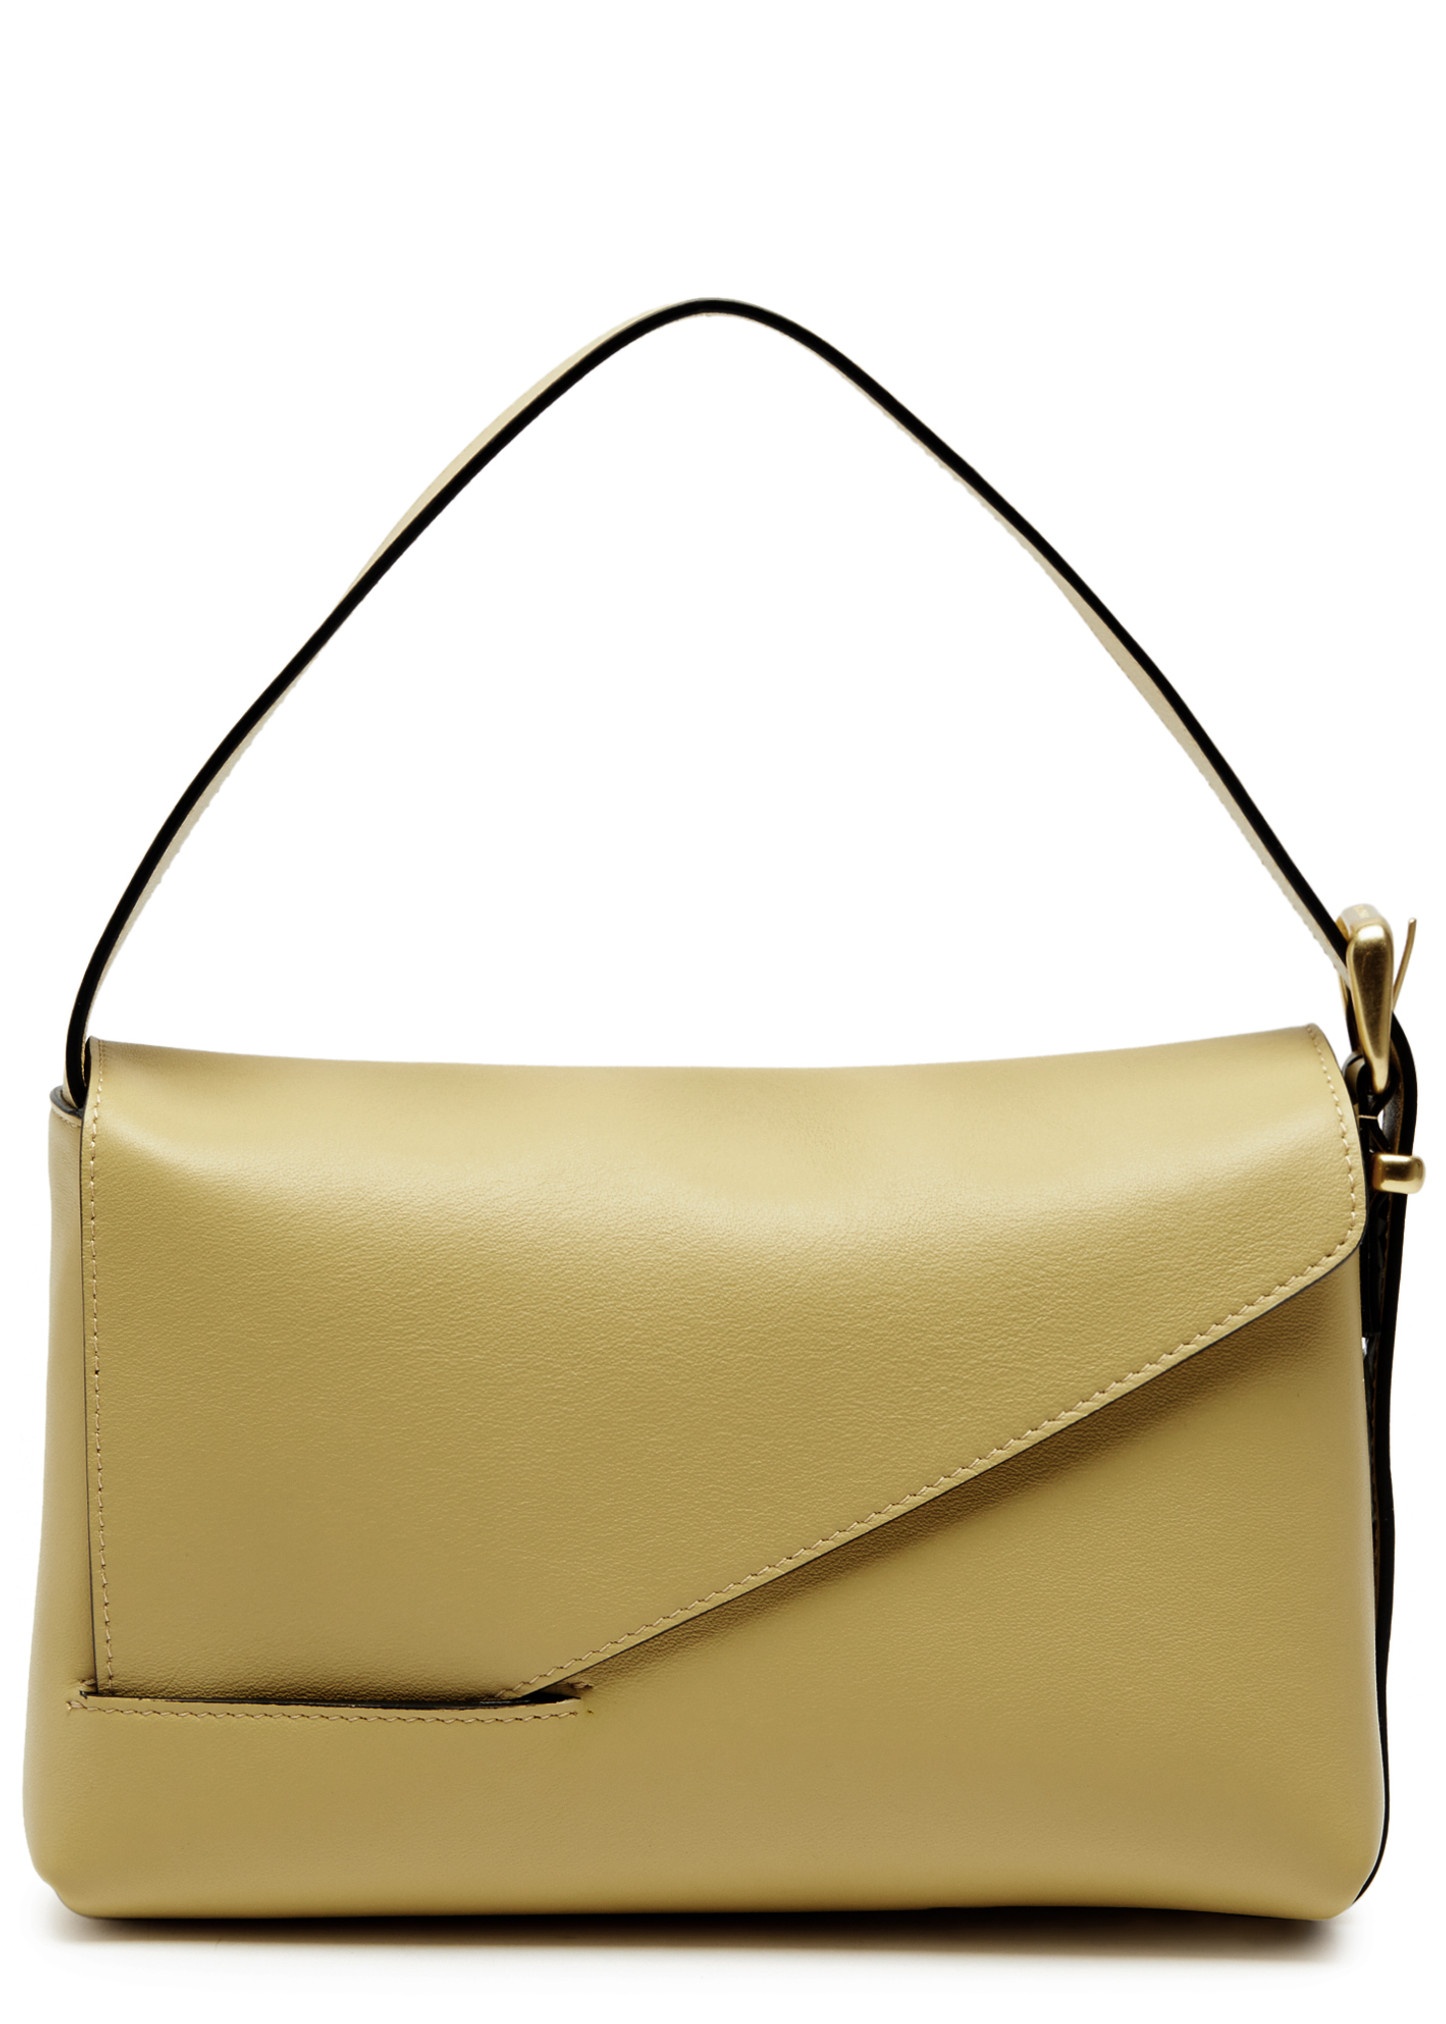 Oscar leather shoulder bag - 1